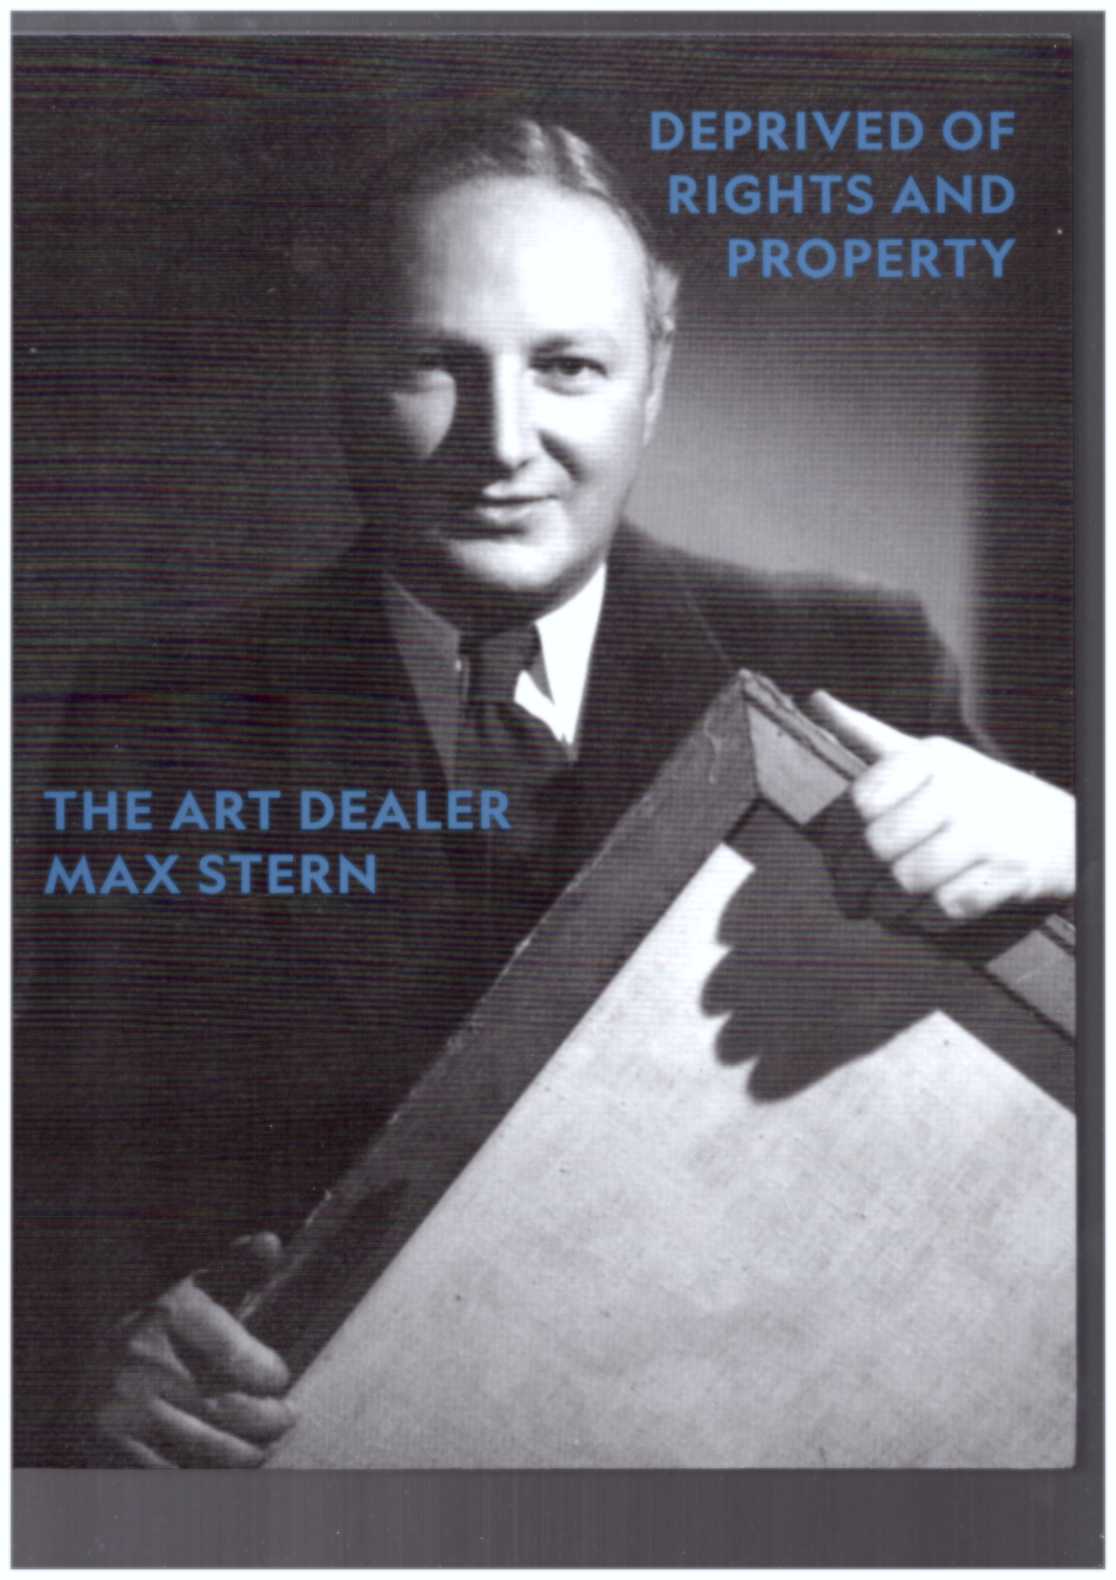 BURES-KREMSER, Kim (ed.) - Deprived of Rights and Property: The Art Dealer Max Stern